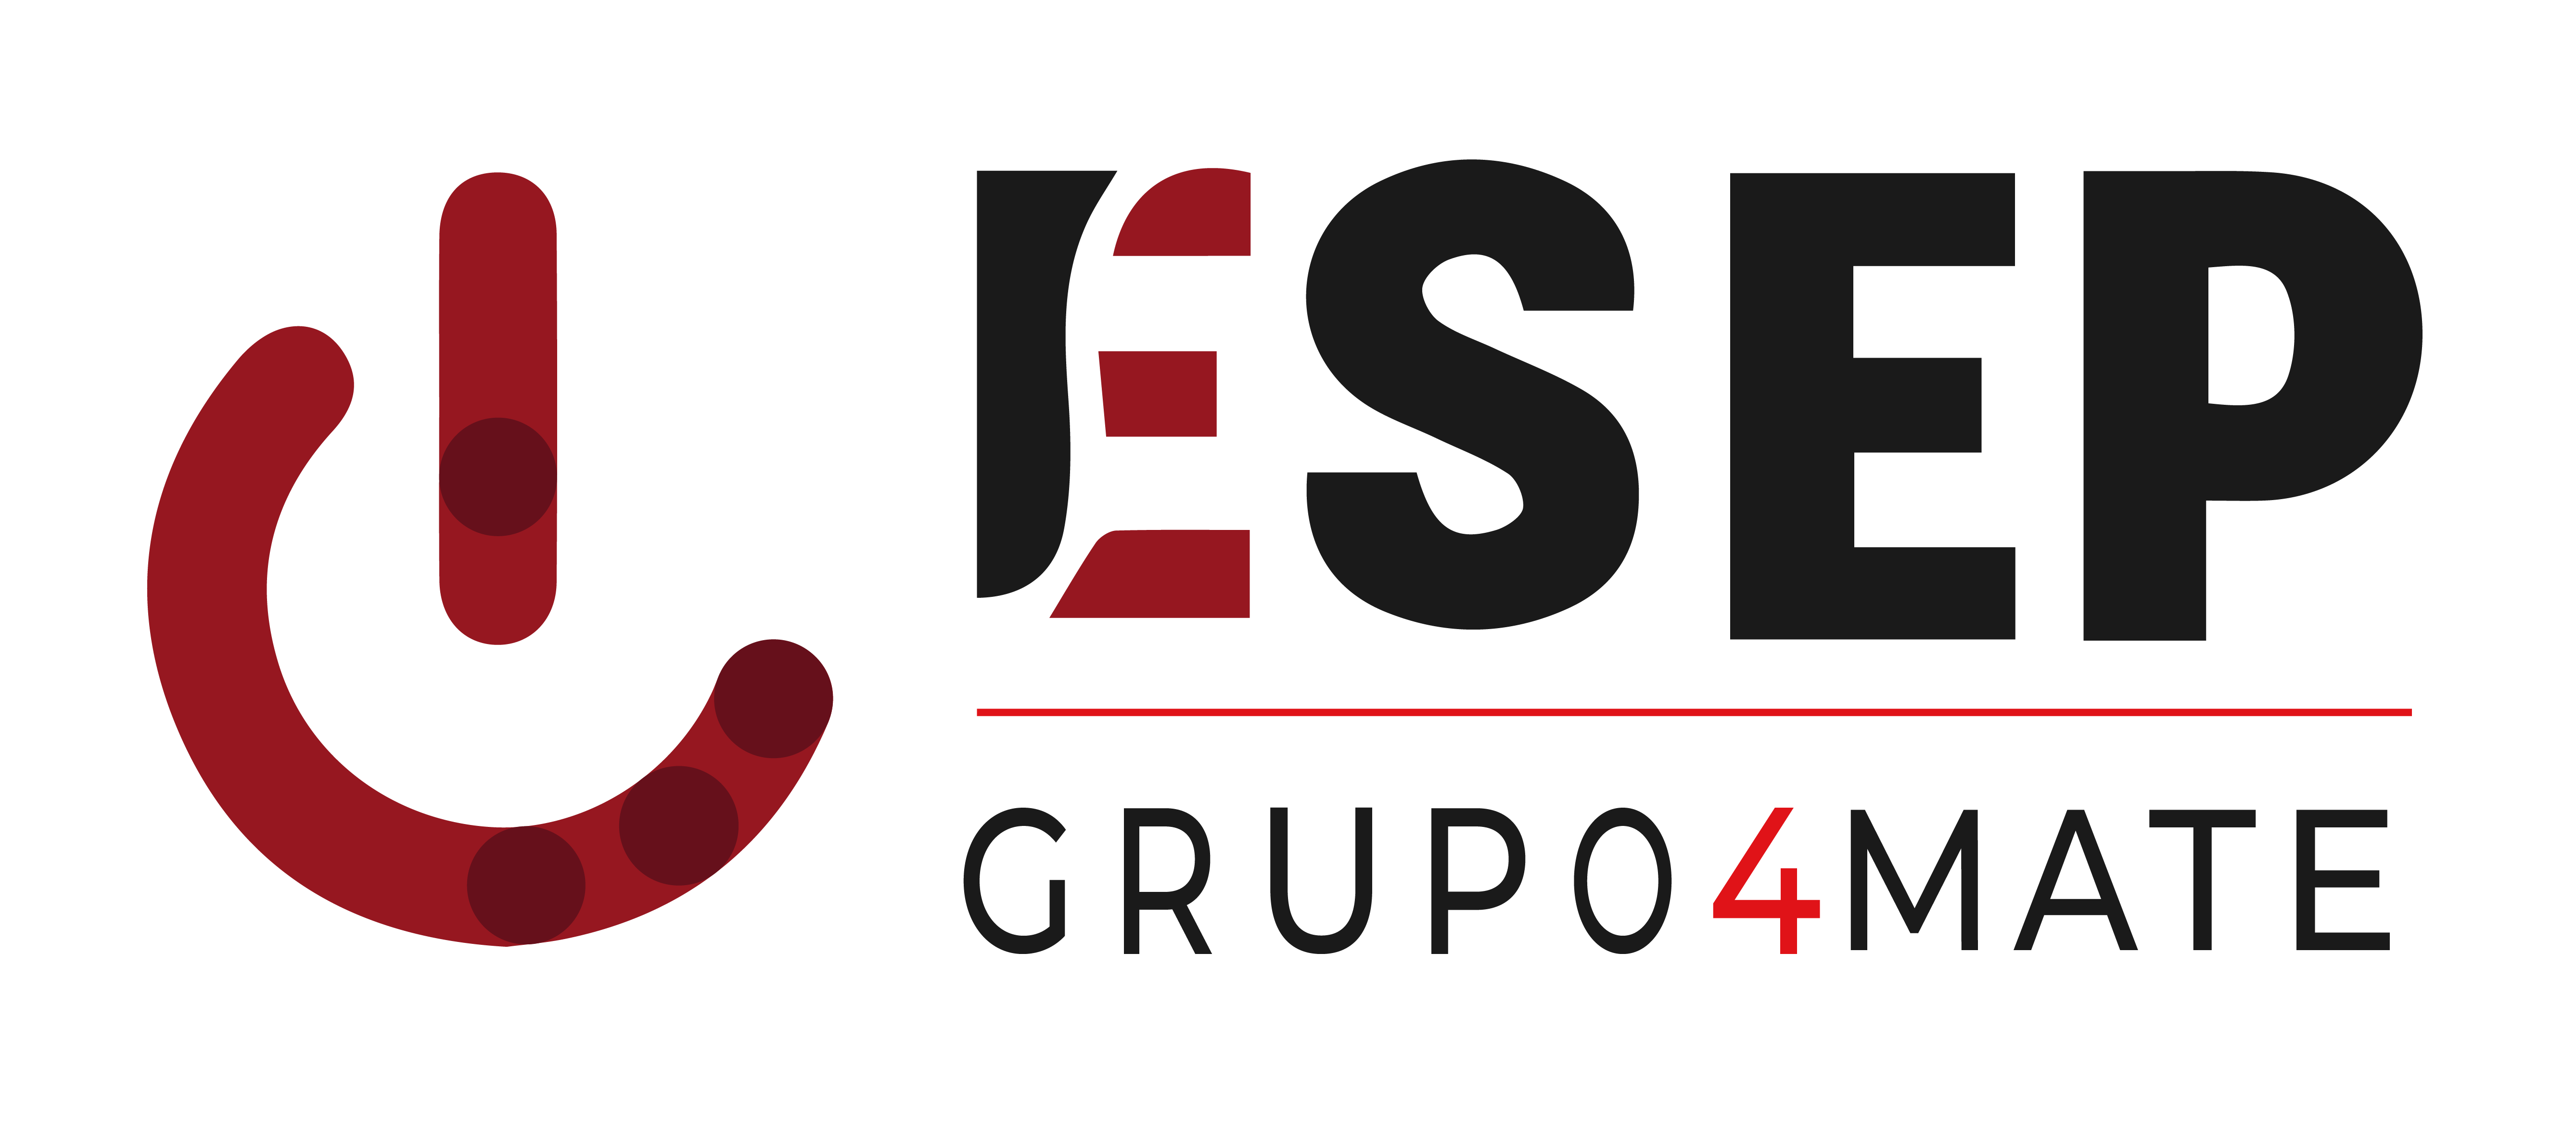 Logo de la Escuela de Socorristas ESEP FORMACION, acreditada y homologada por la Consejería de Sanidad de la Comunidad de Madrid